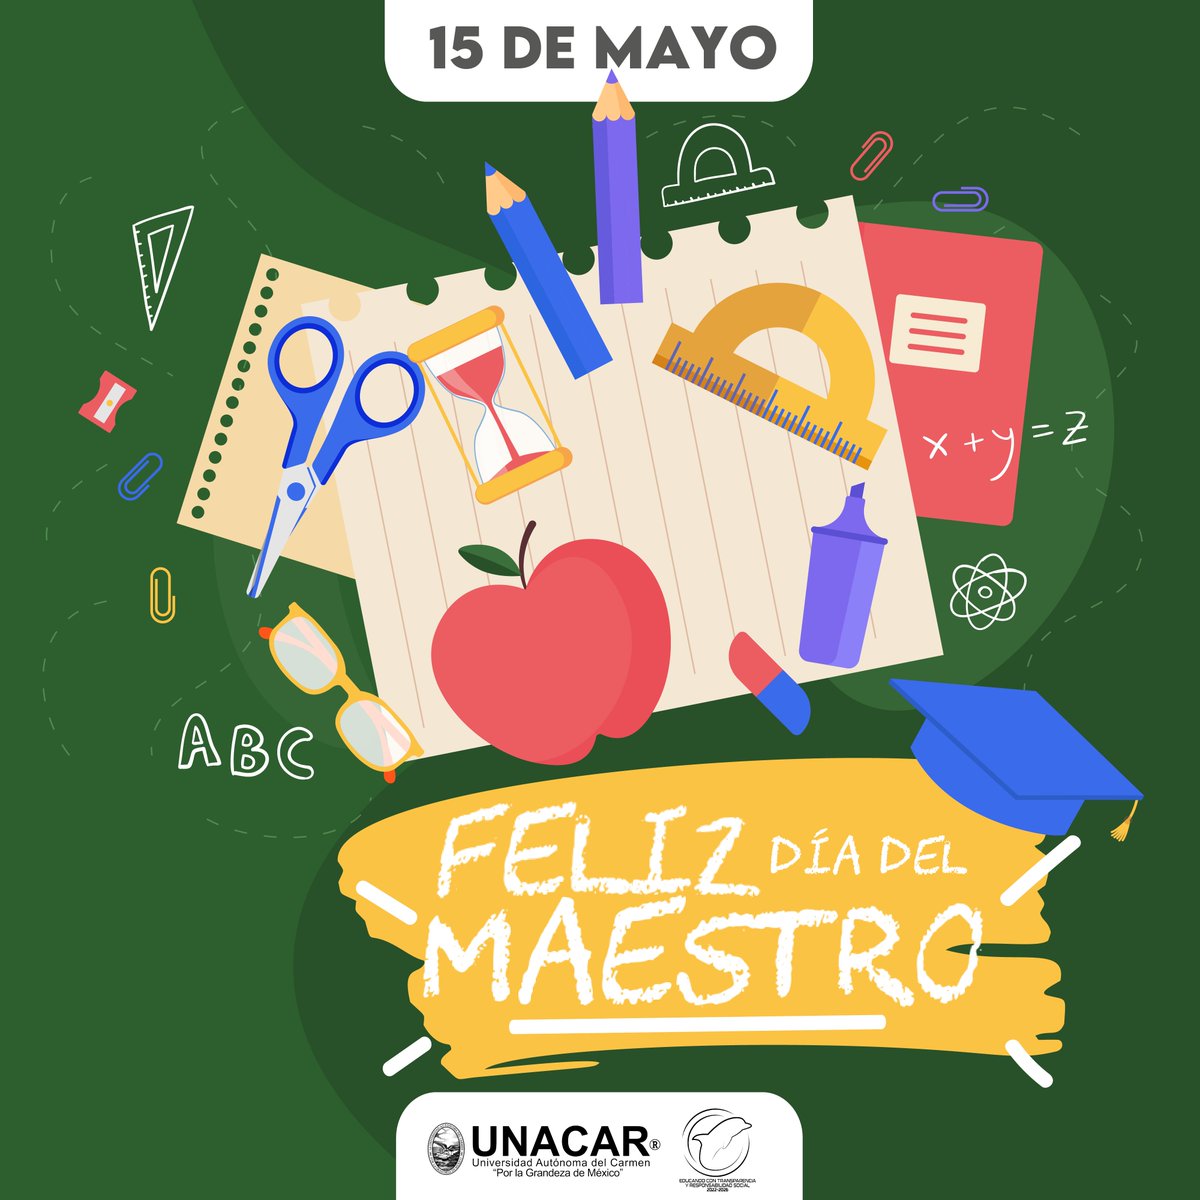 Nuestro reconocimiento todos los maestros universitarios🐬 #PorLaGrandezaDeMéxico #Educando con #Transparencia y #ResponsabilidadSocial #DíaDelMaestro #15DeMayo